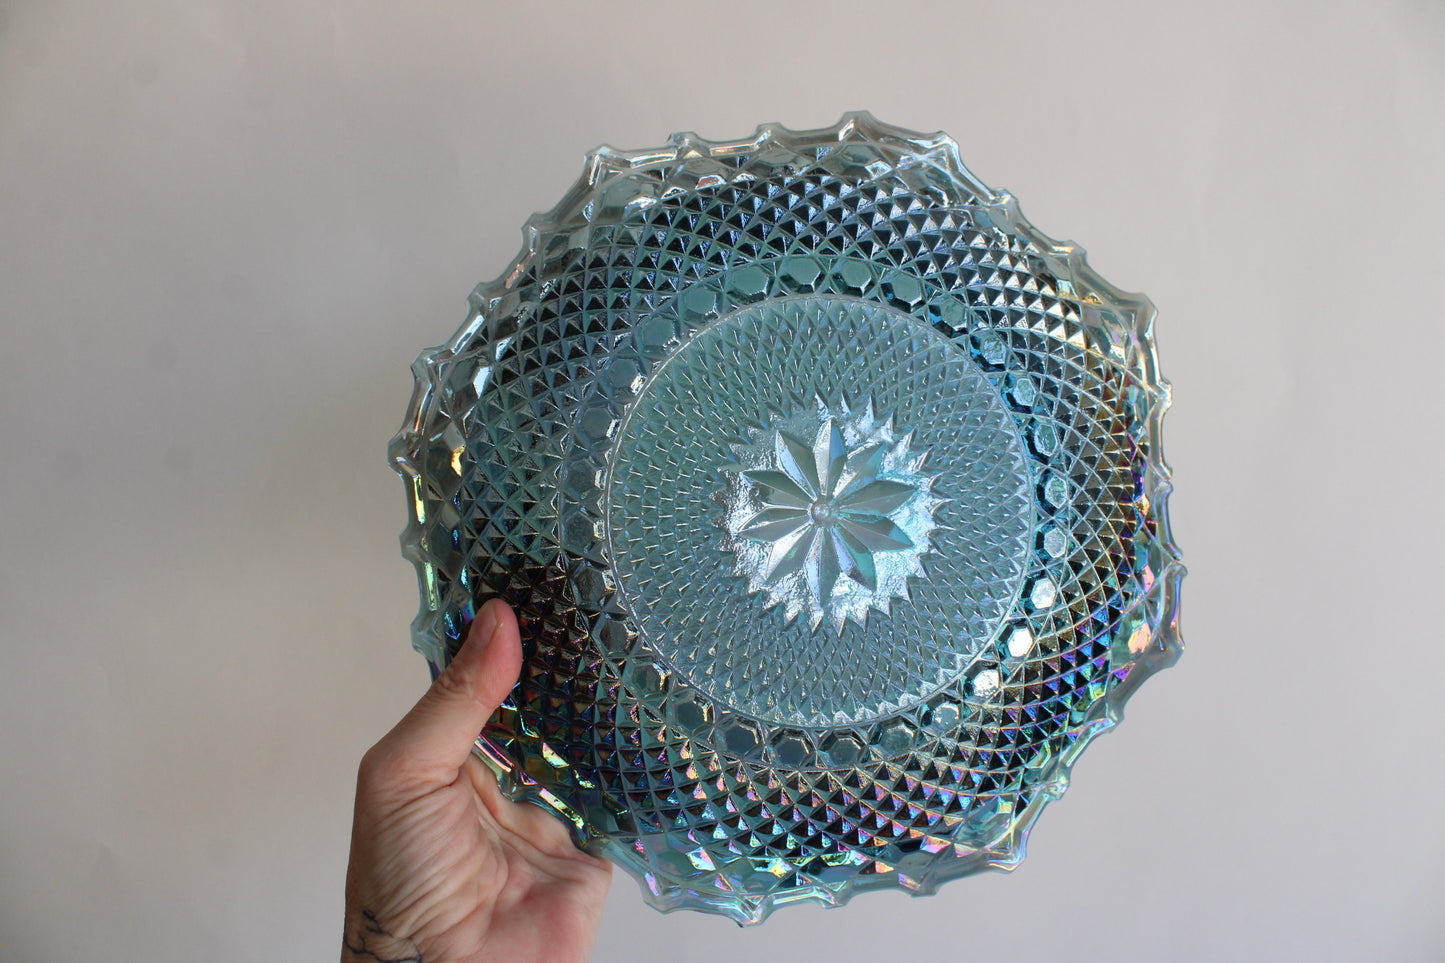 Vintage Blue Carnival Glass Bowl